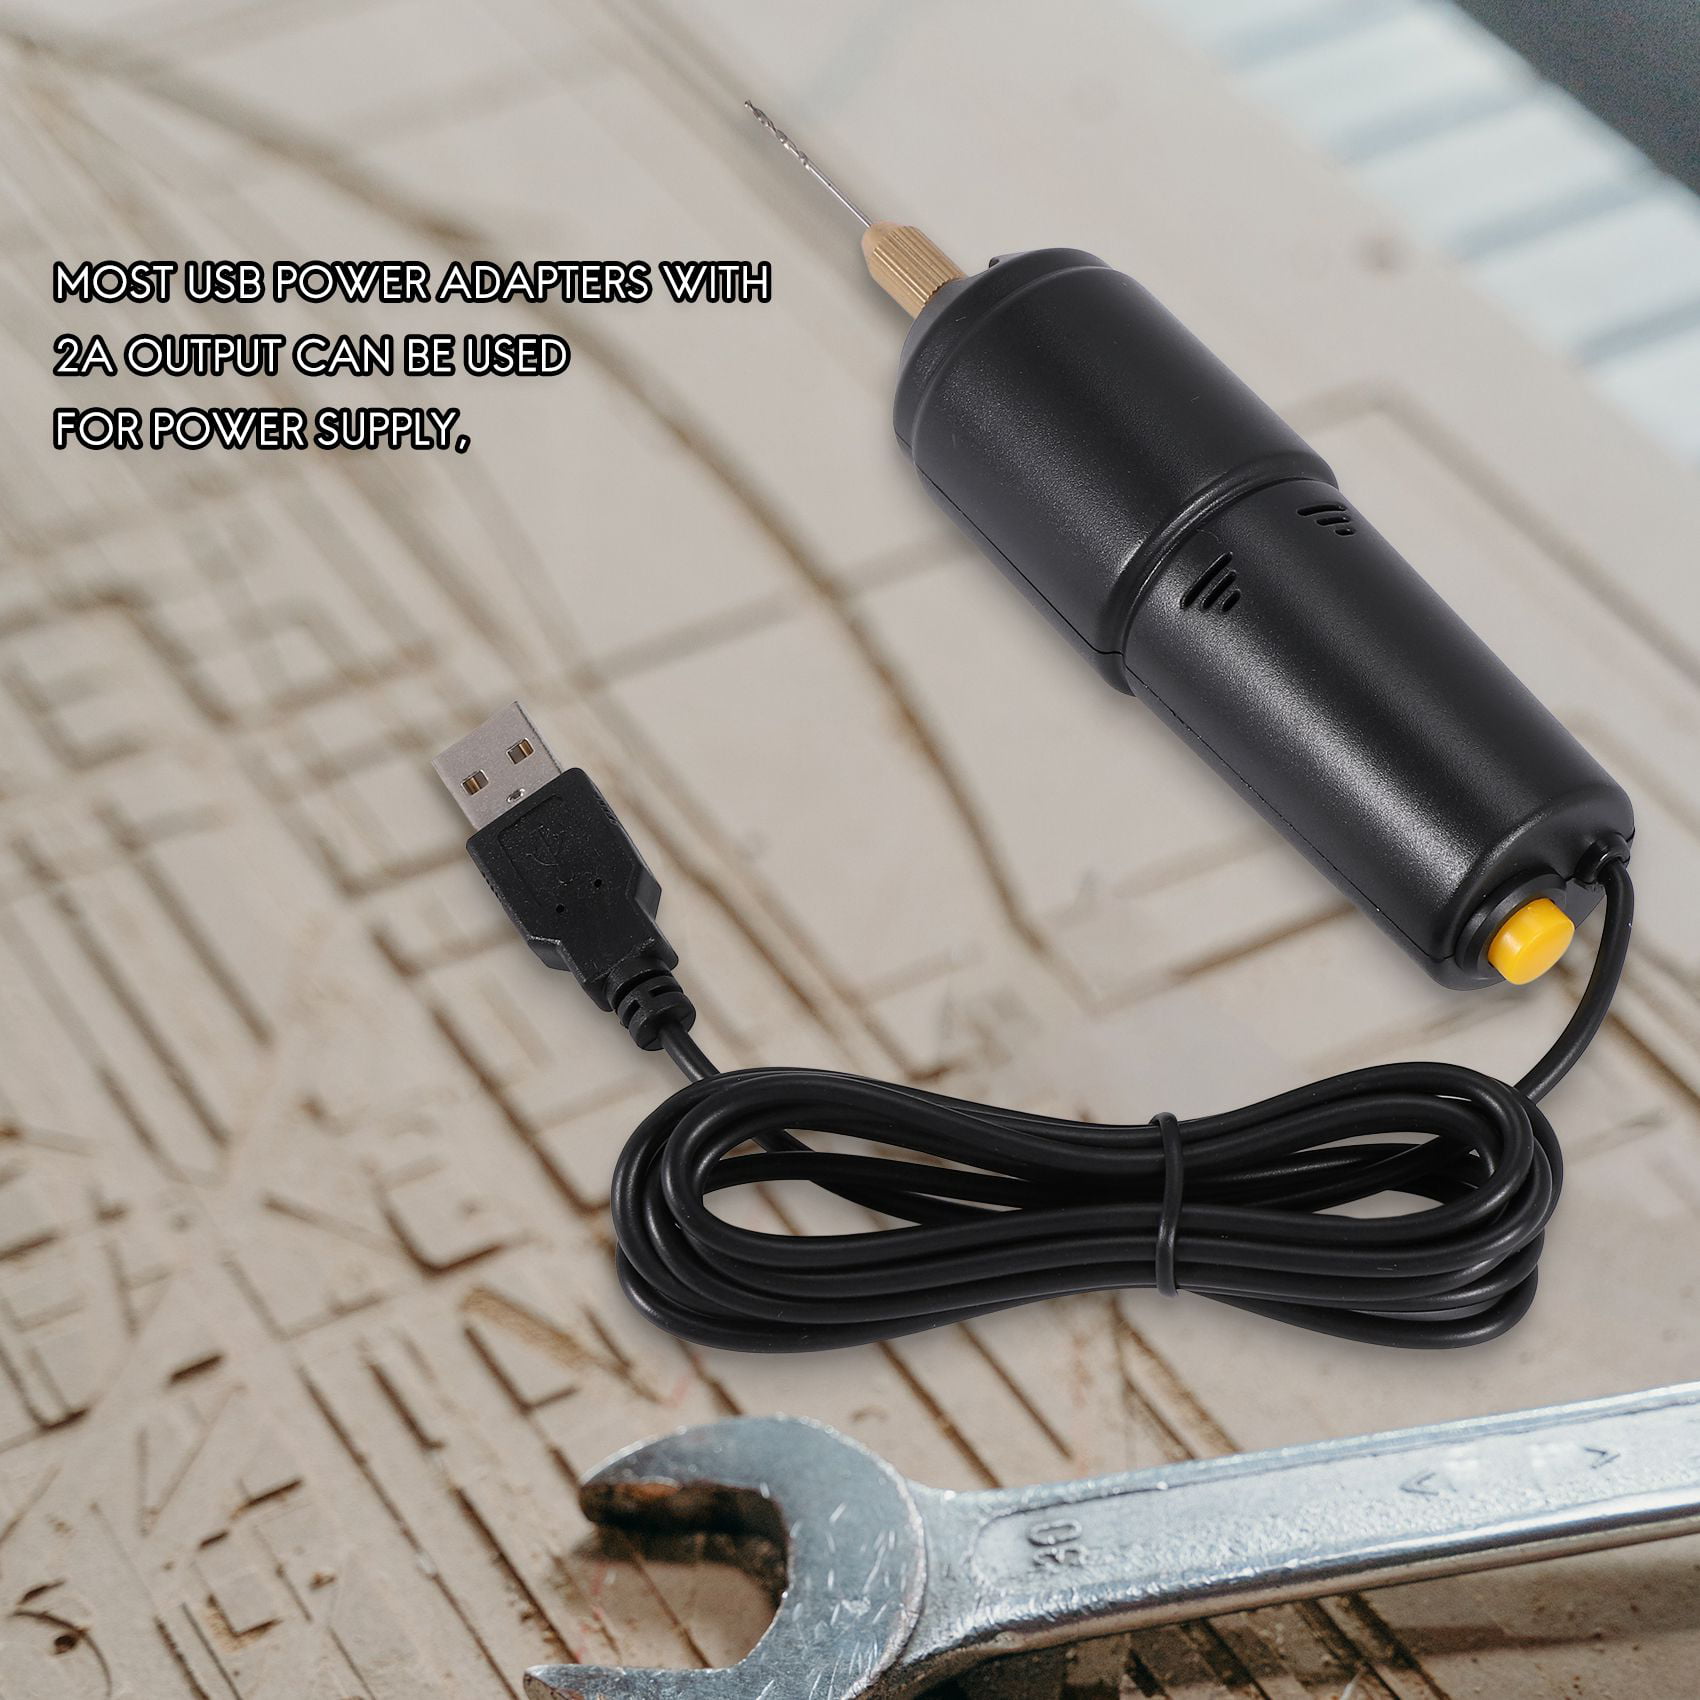 Mini Electric Drill Handheld Drill Bits Kit Epoxy Resin Jewelry Making Wood  Craft Tools 5V USB Plug Screwdriver Tool Kit